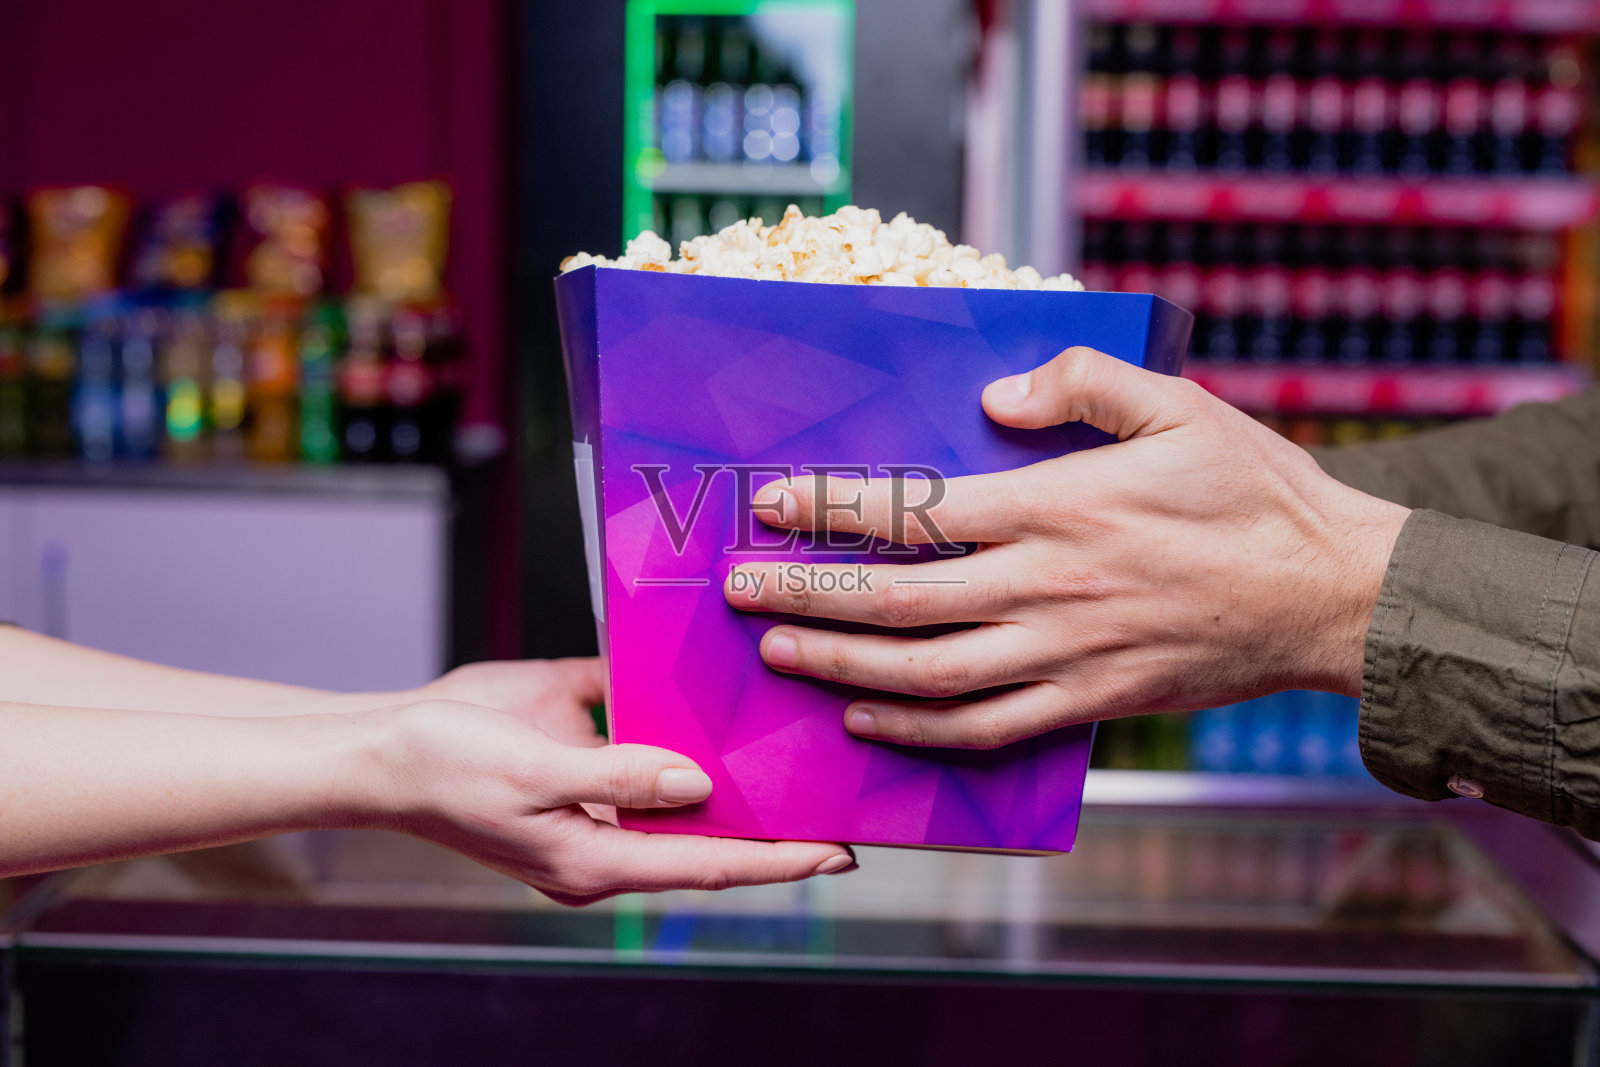 一个年轻人的手拿着一个装满爆米花的紫色大纸盒在电影院照片摄影图片